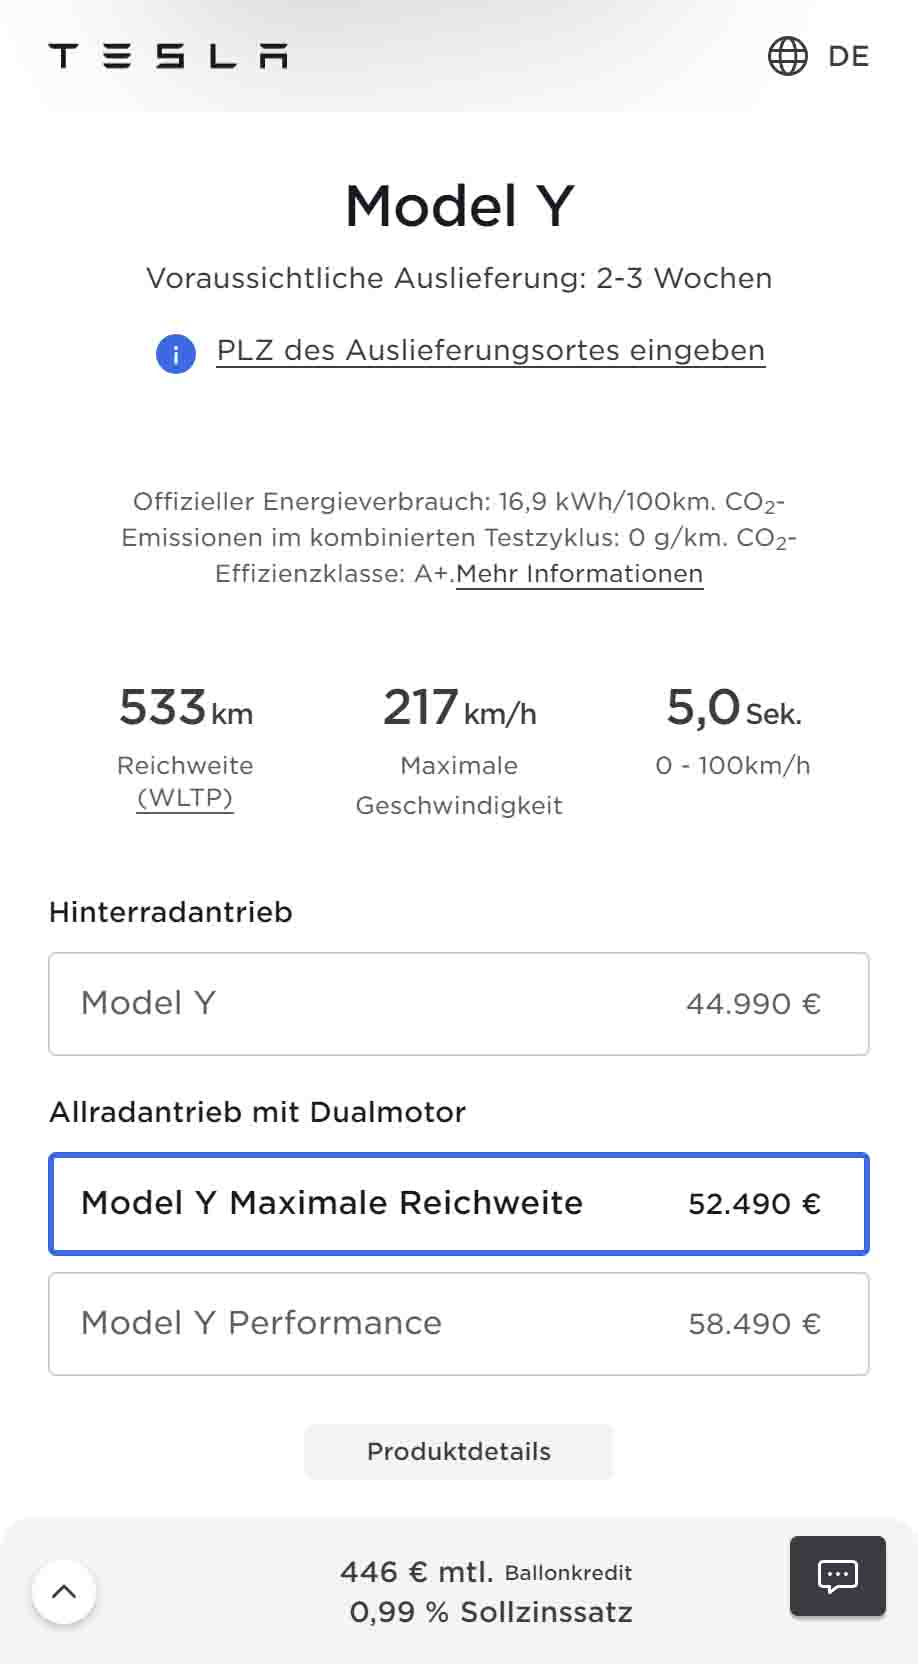 Tesla Model Y Increases $2,700 in Germany